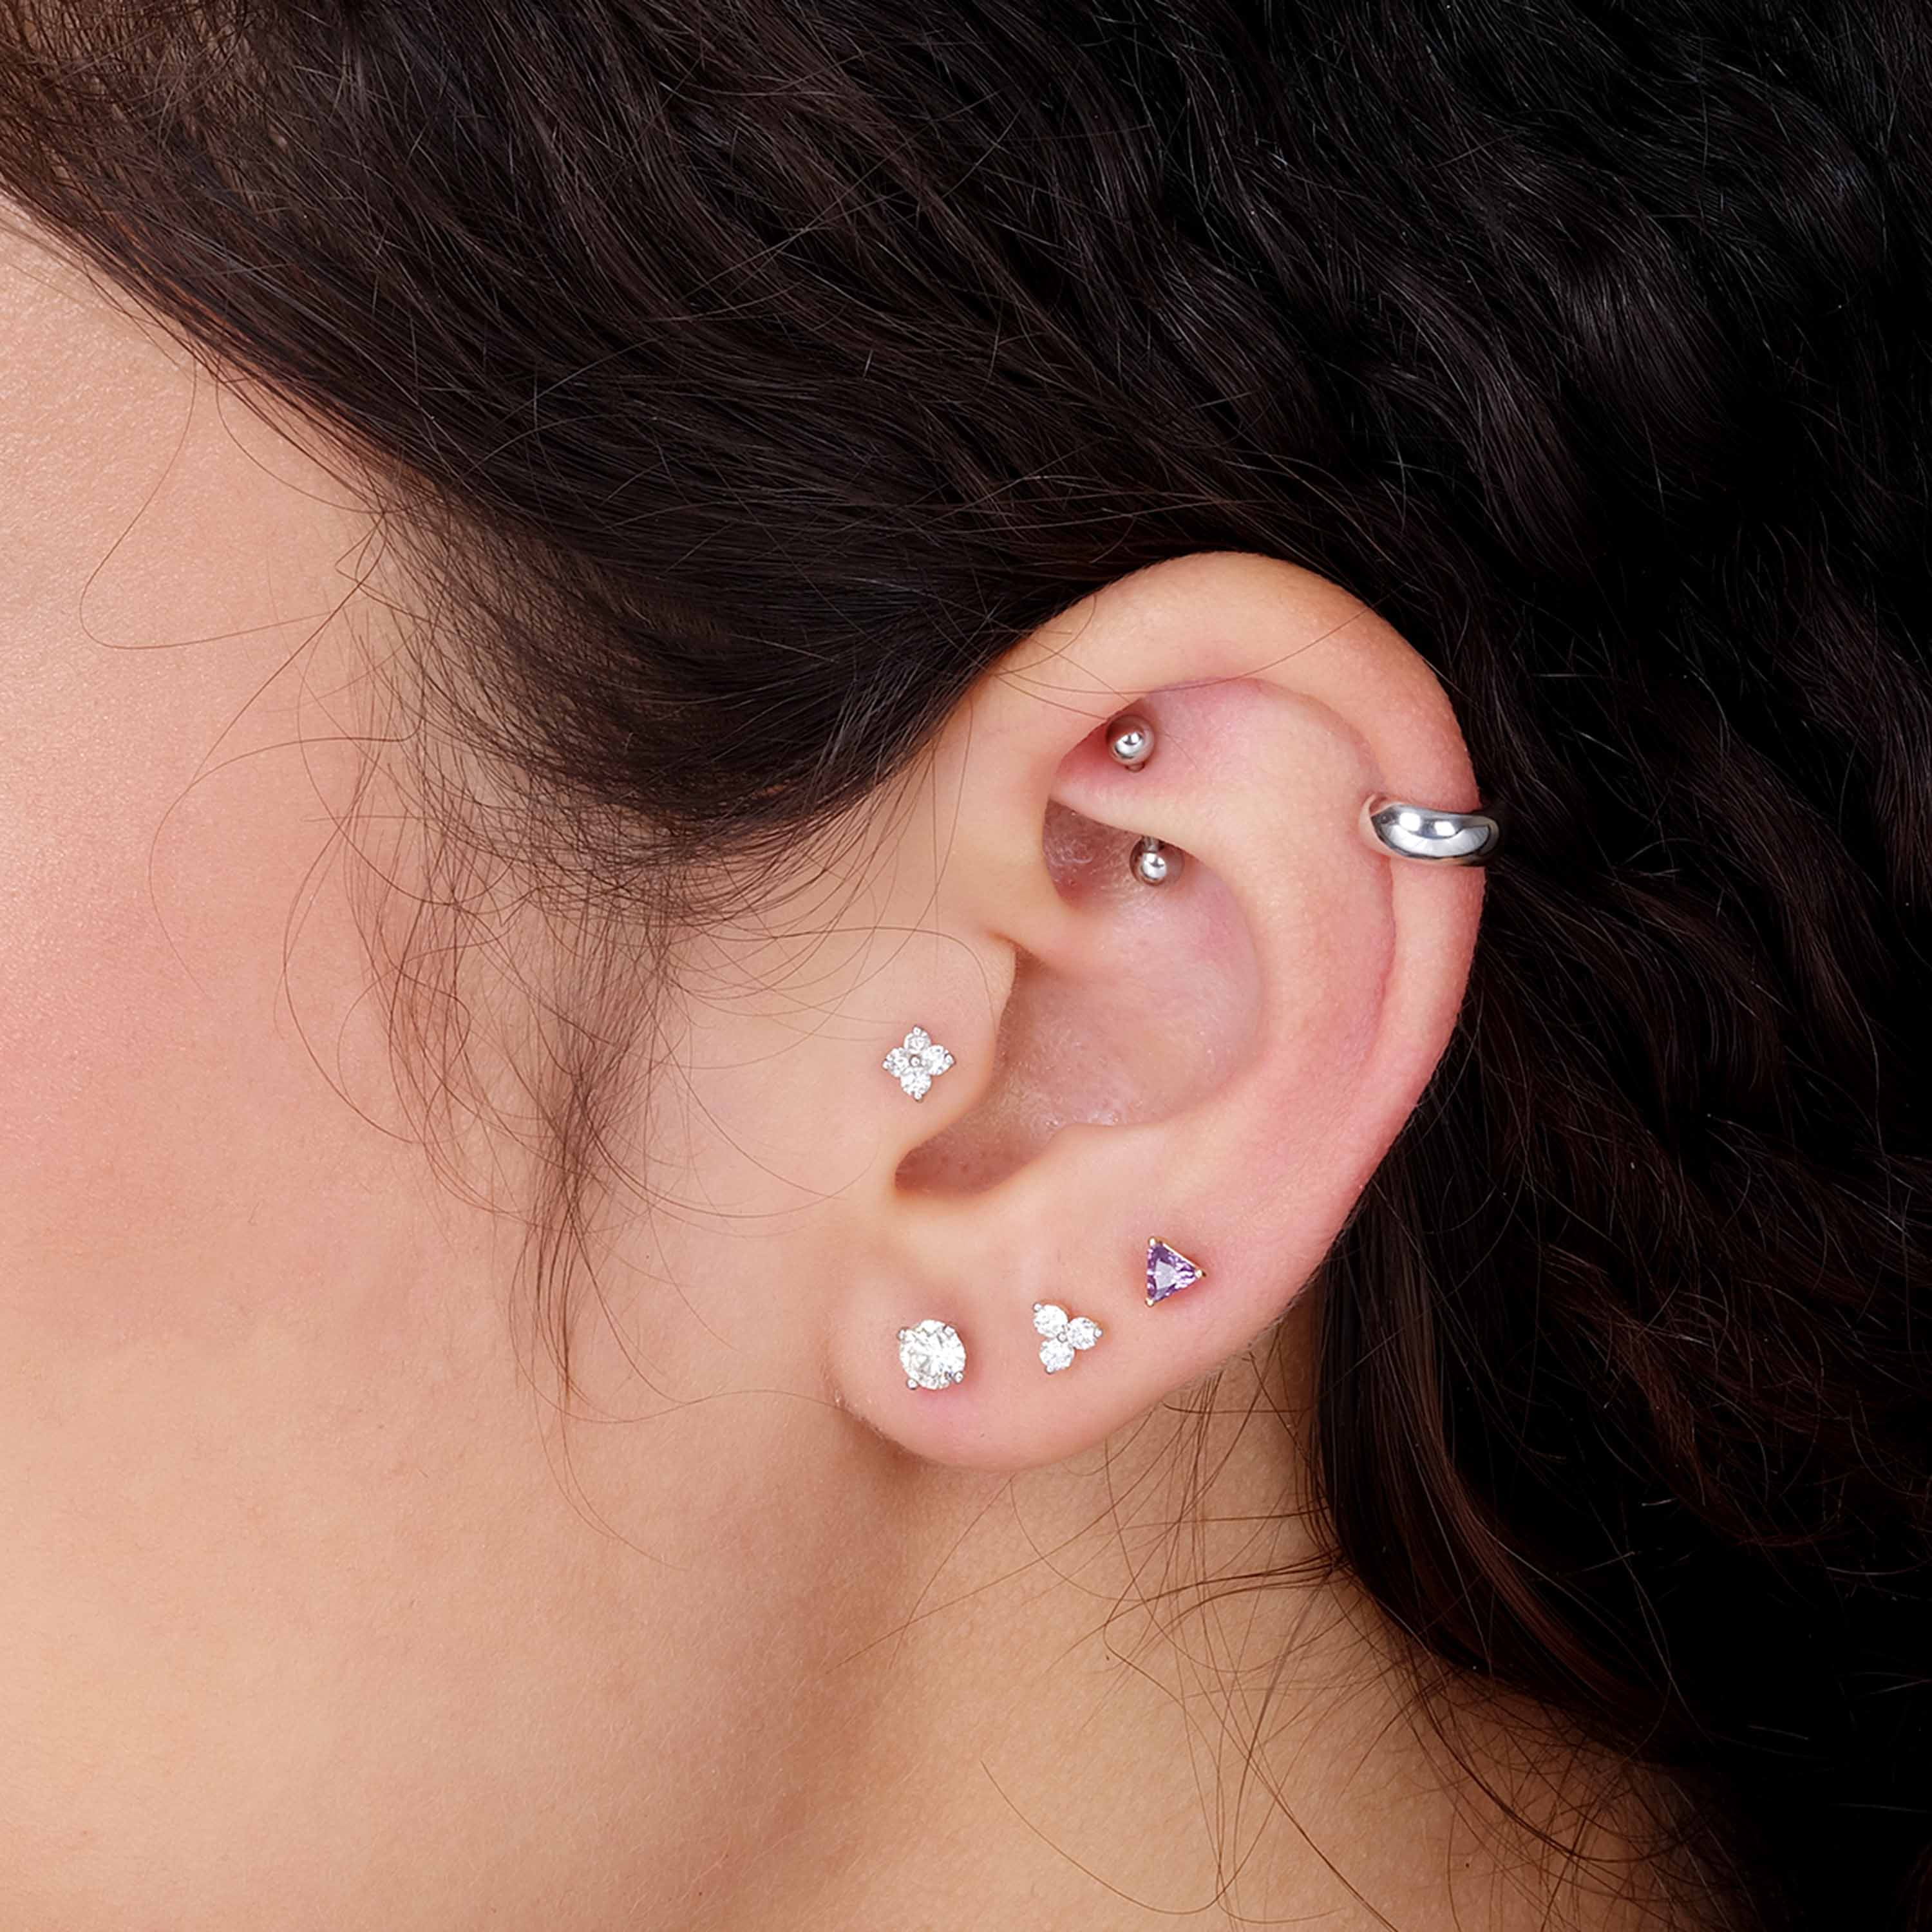 Zircon Cartilage Earring Stud Ear Tragus Helix Stud Upper Ear Piercing  Jewelry | eBay